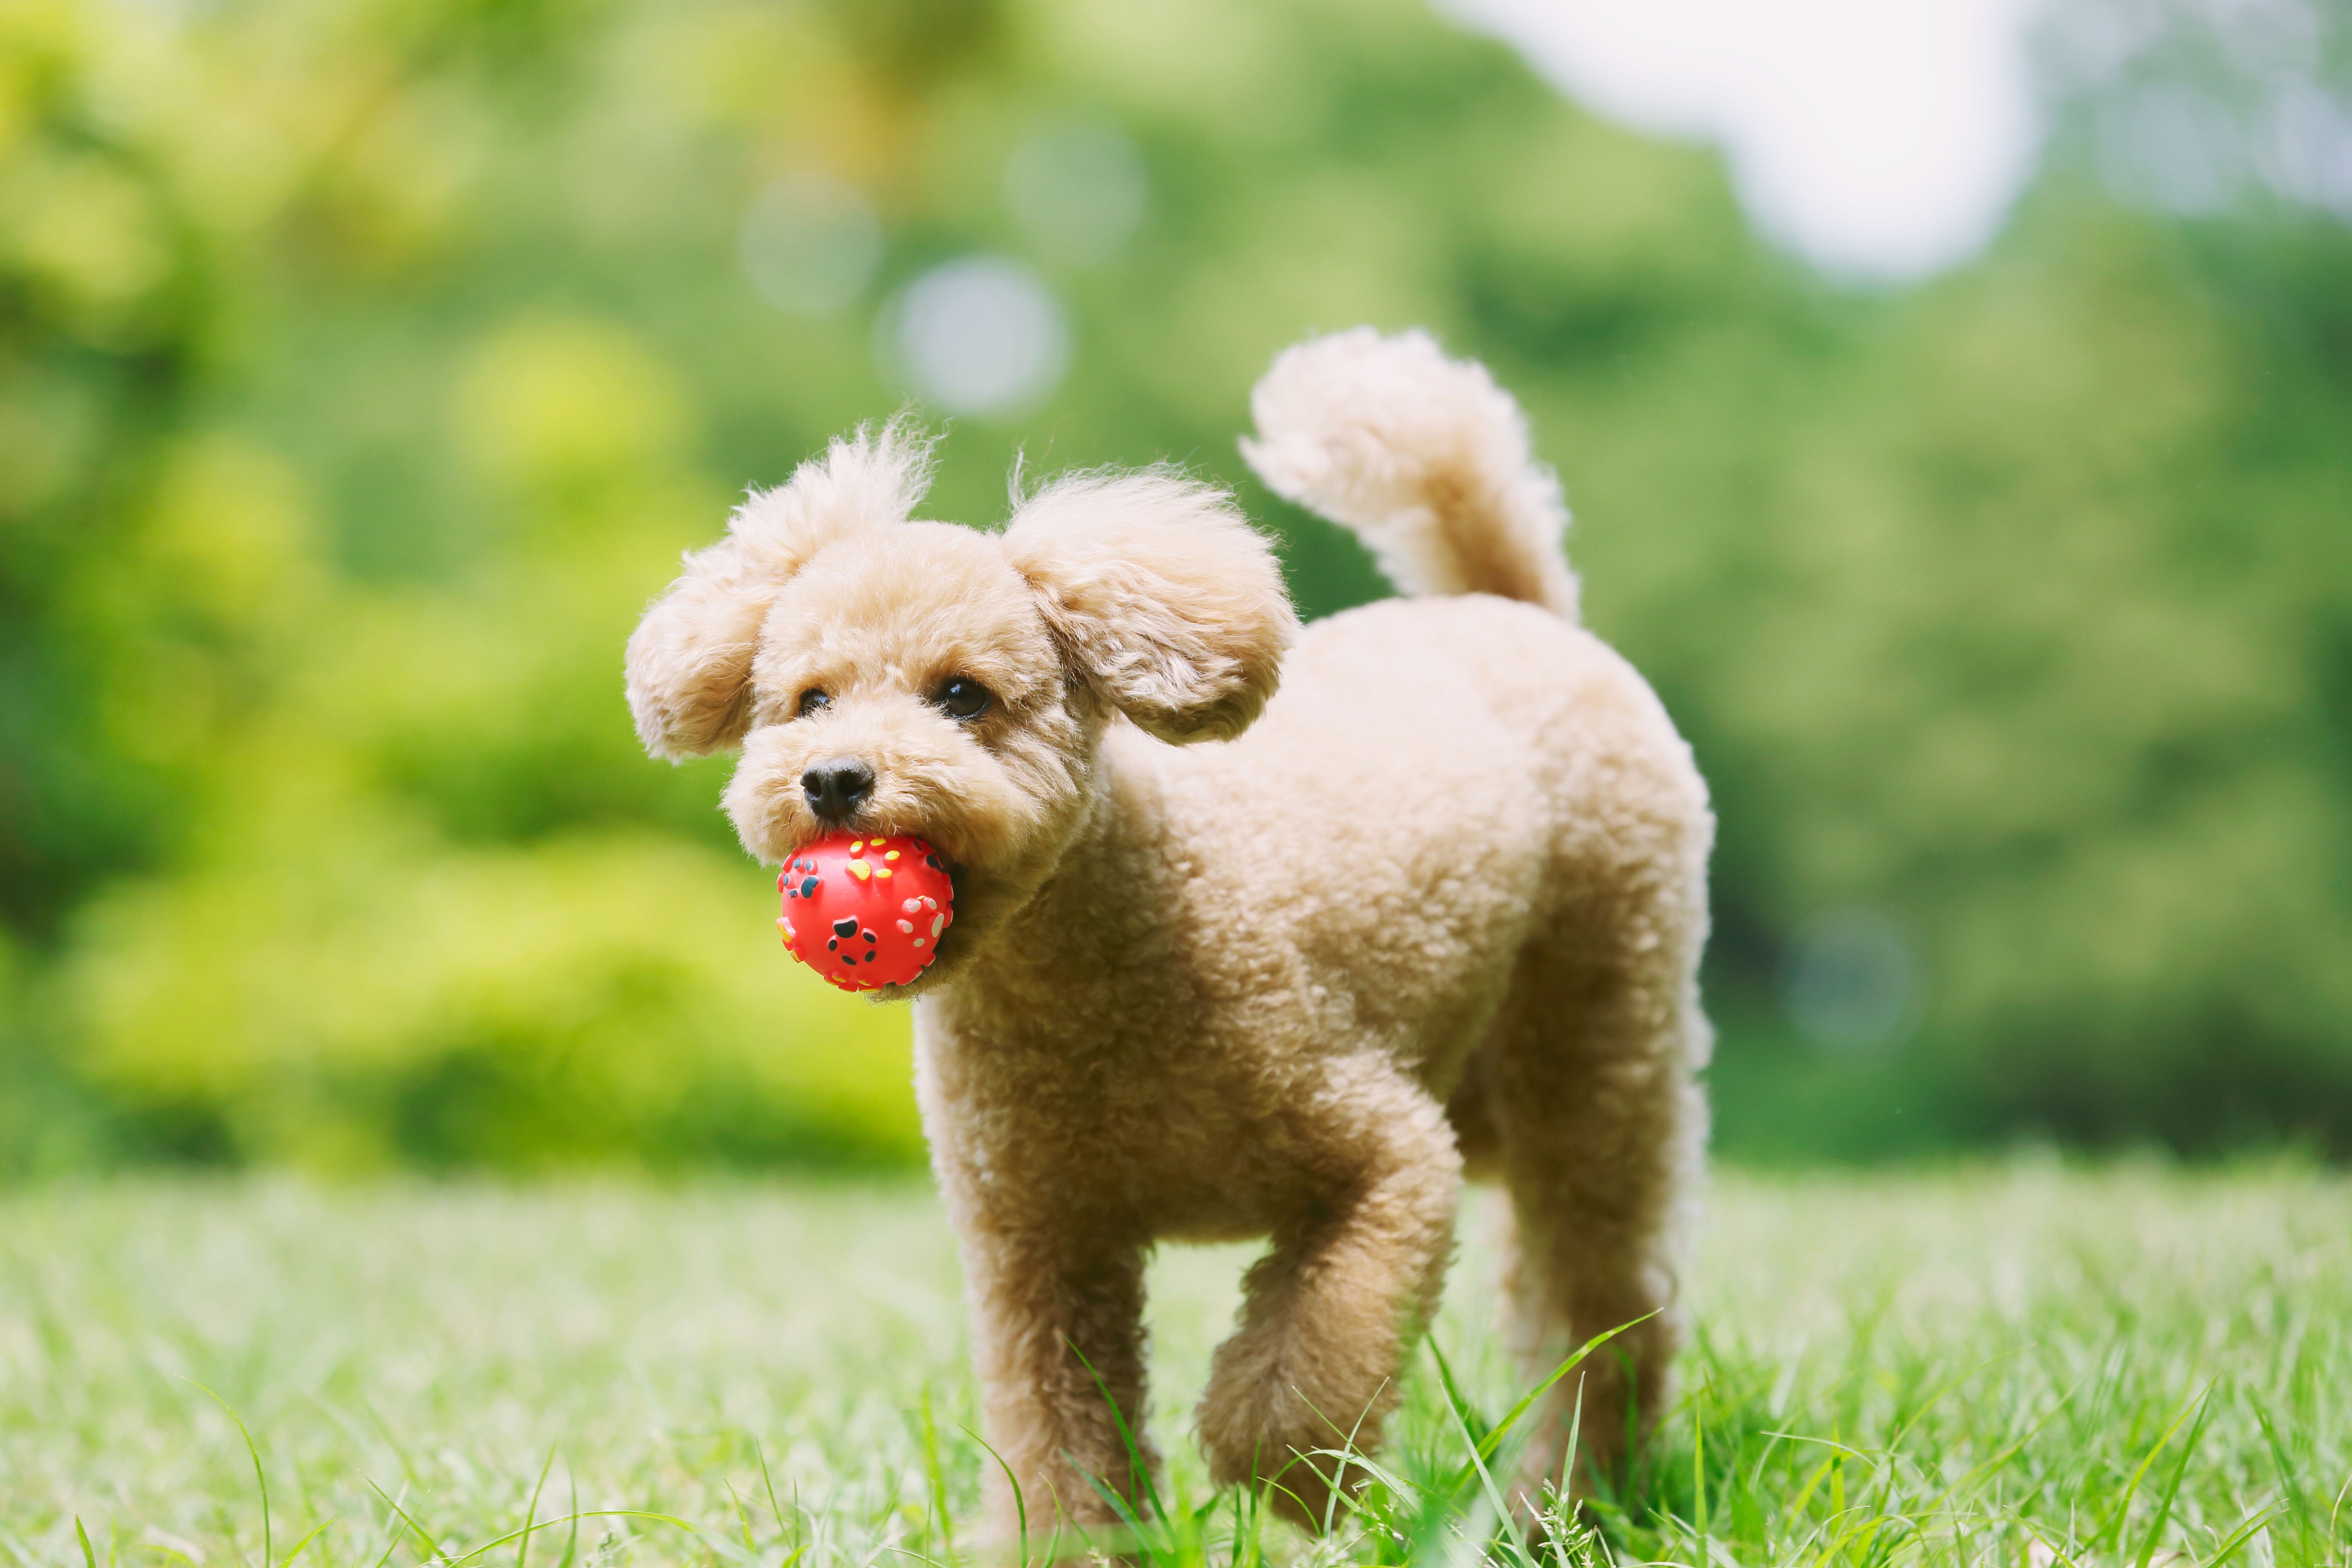 Poedel:kenmerken en verzorging van hondenrassen